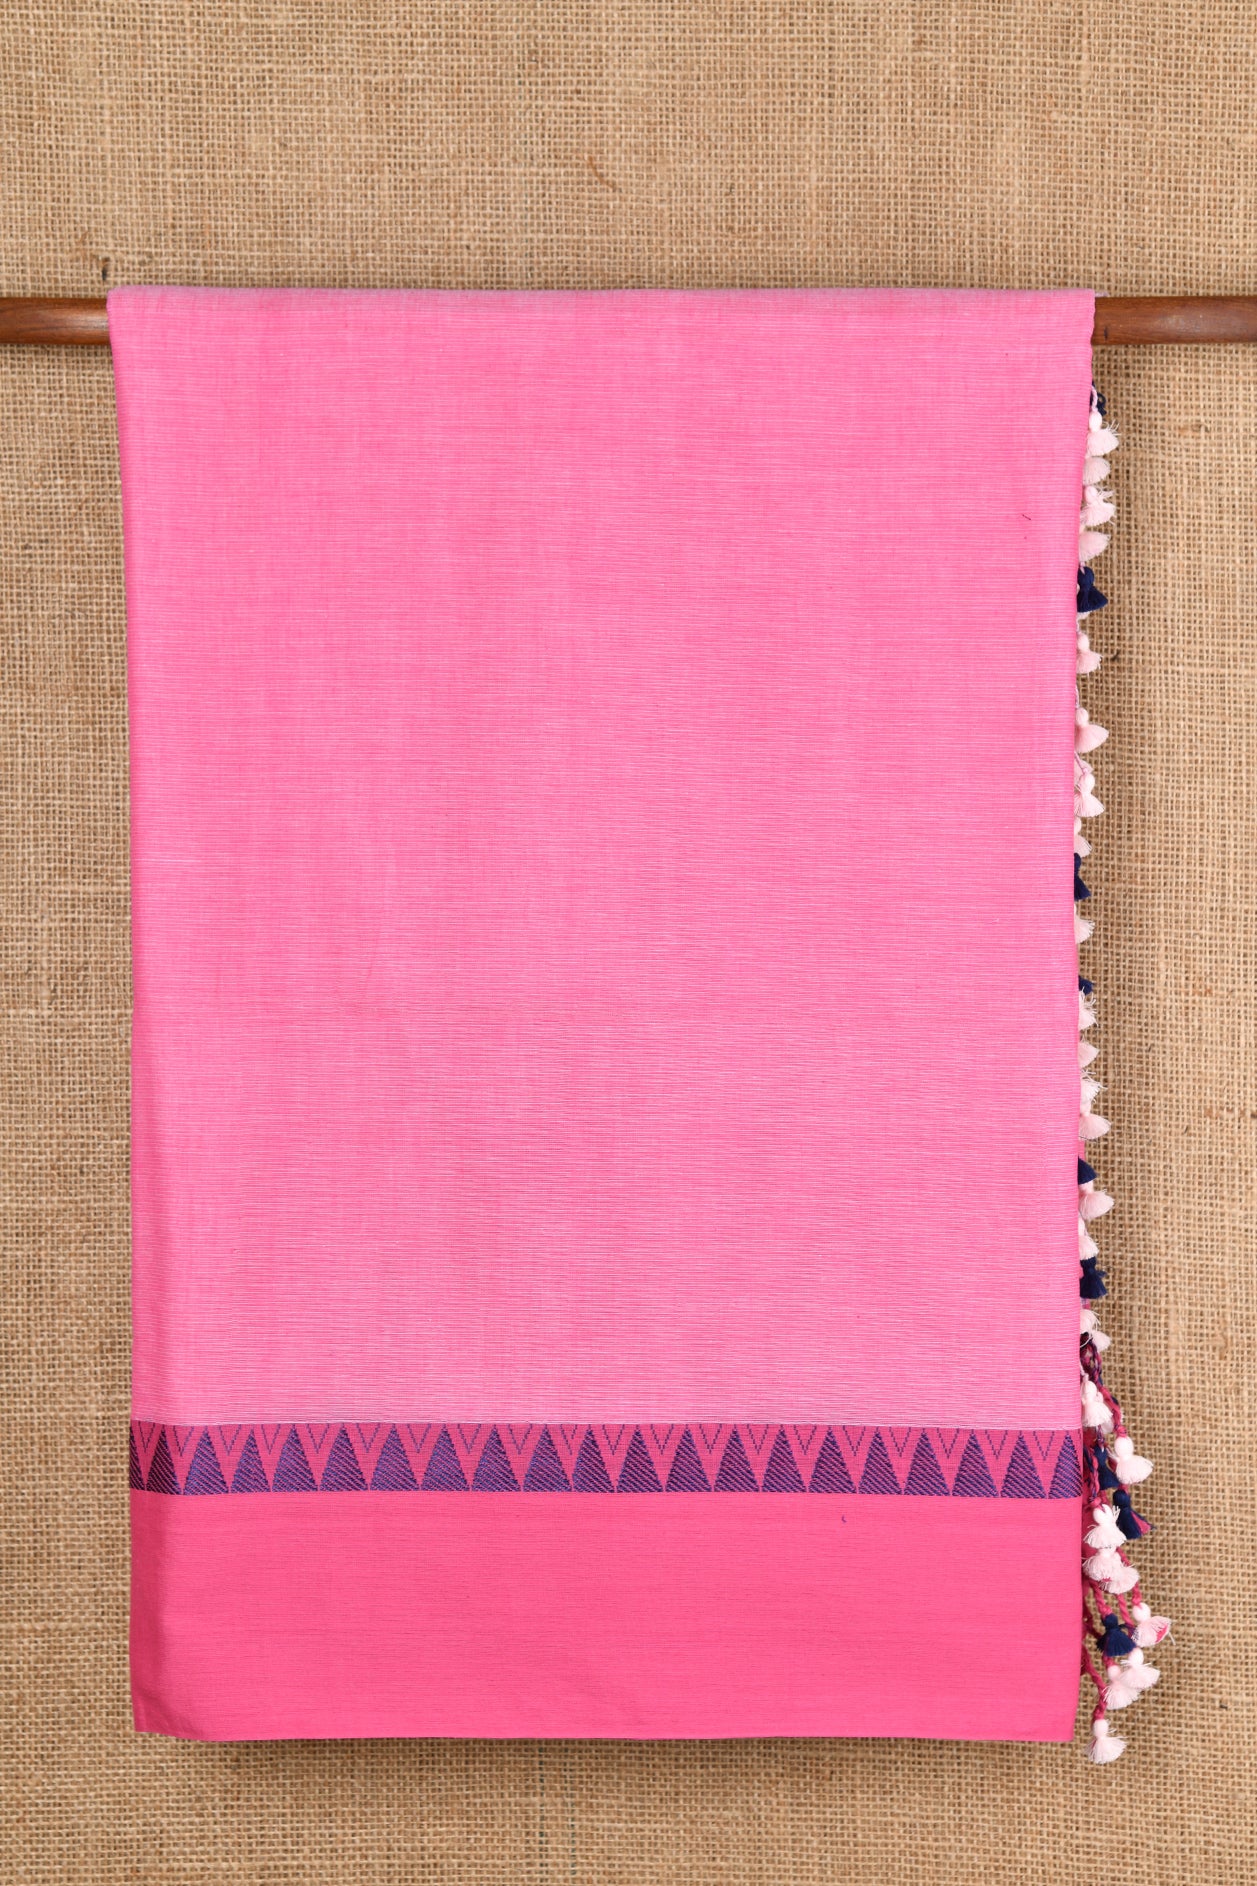 Temple Border Baby Pink Bengal Cotton Saree